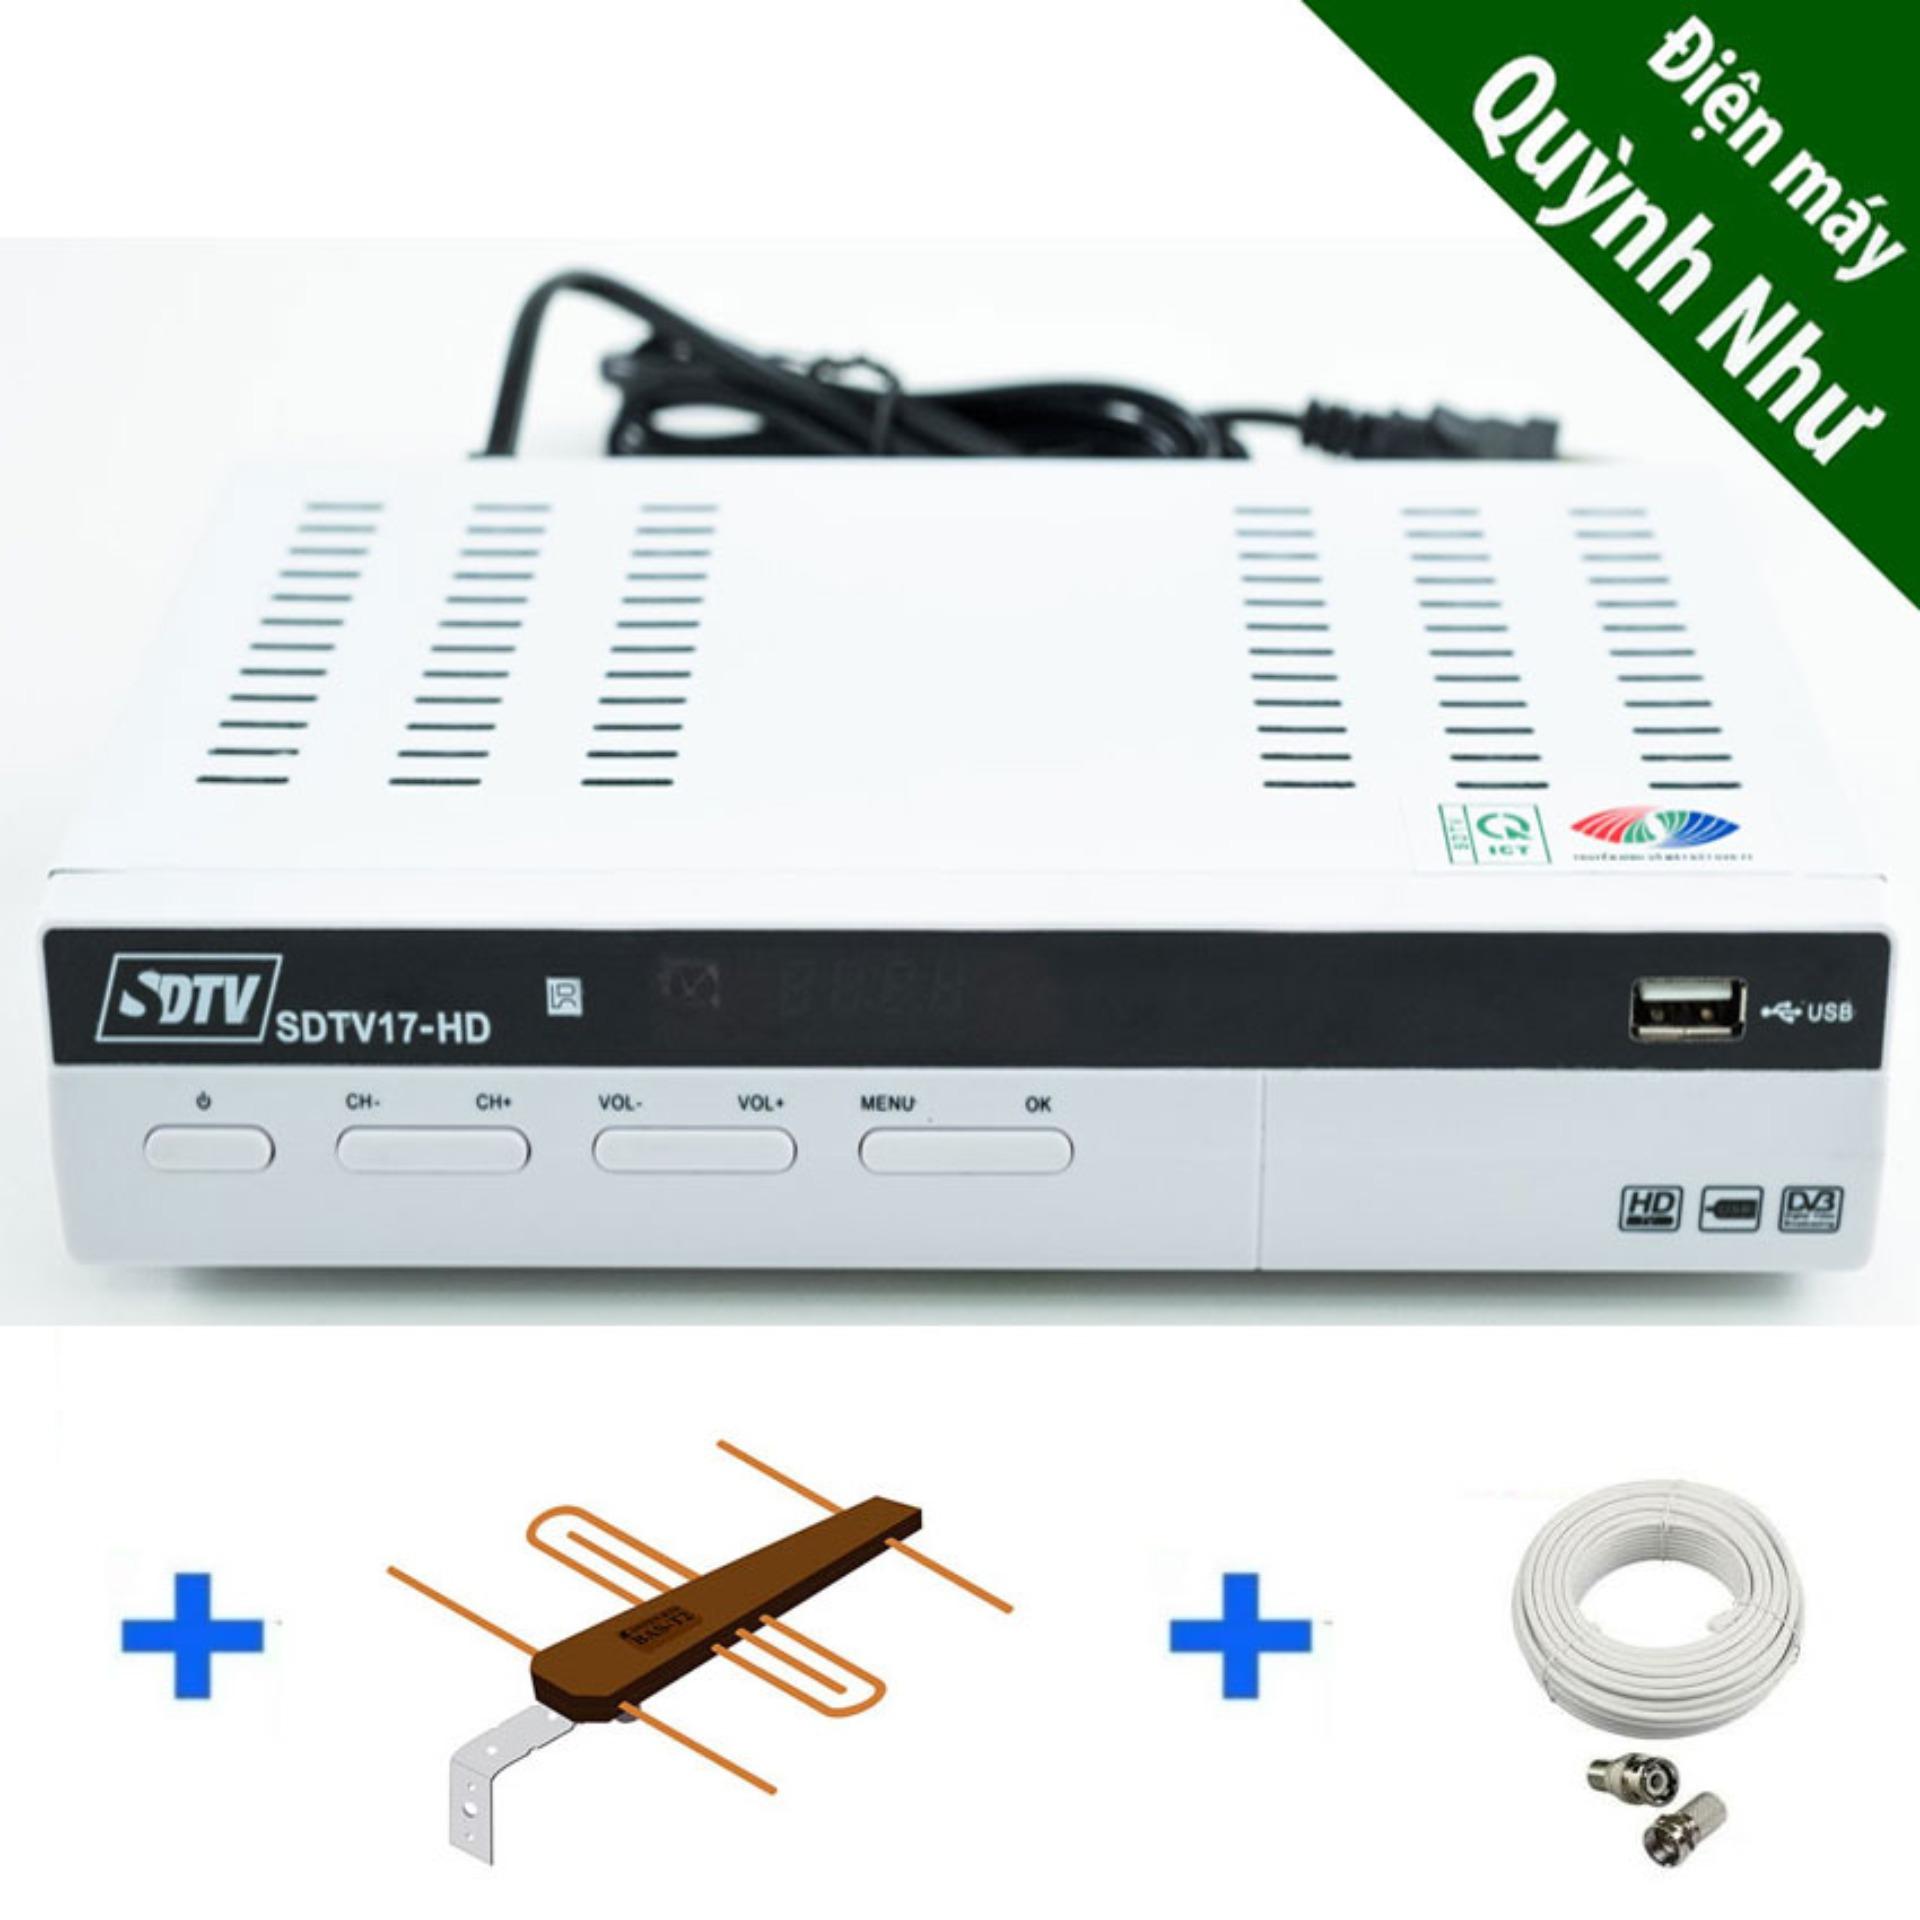 Đầu thu DVB T2 SDTV 17-HD (trắng) + tặng cáp HDMI + Anten BAS-T2 có khếch đại + 15m dây...